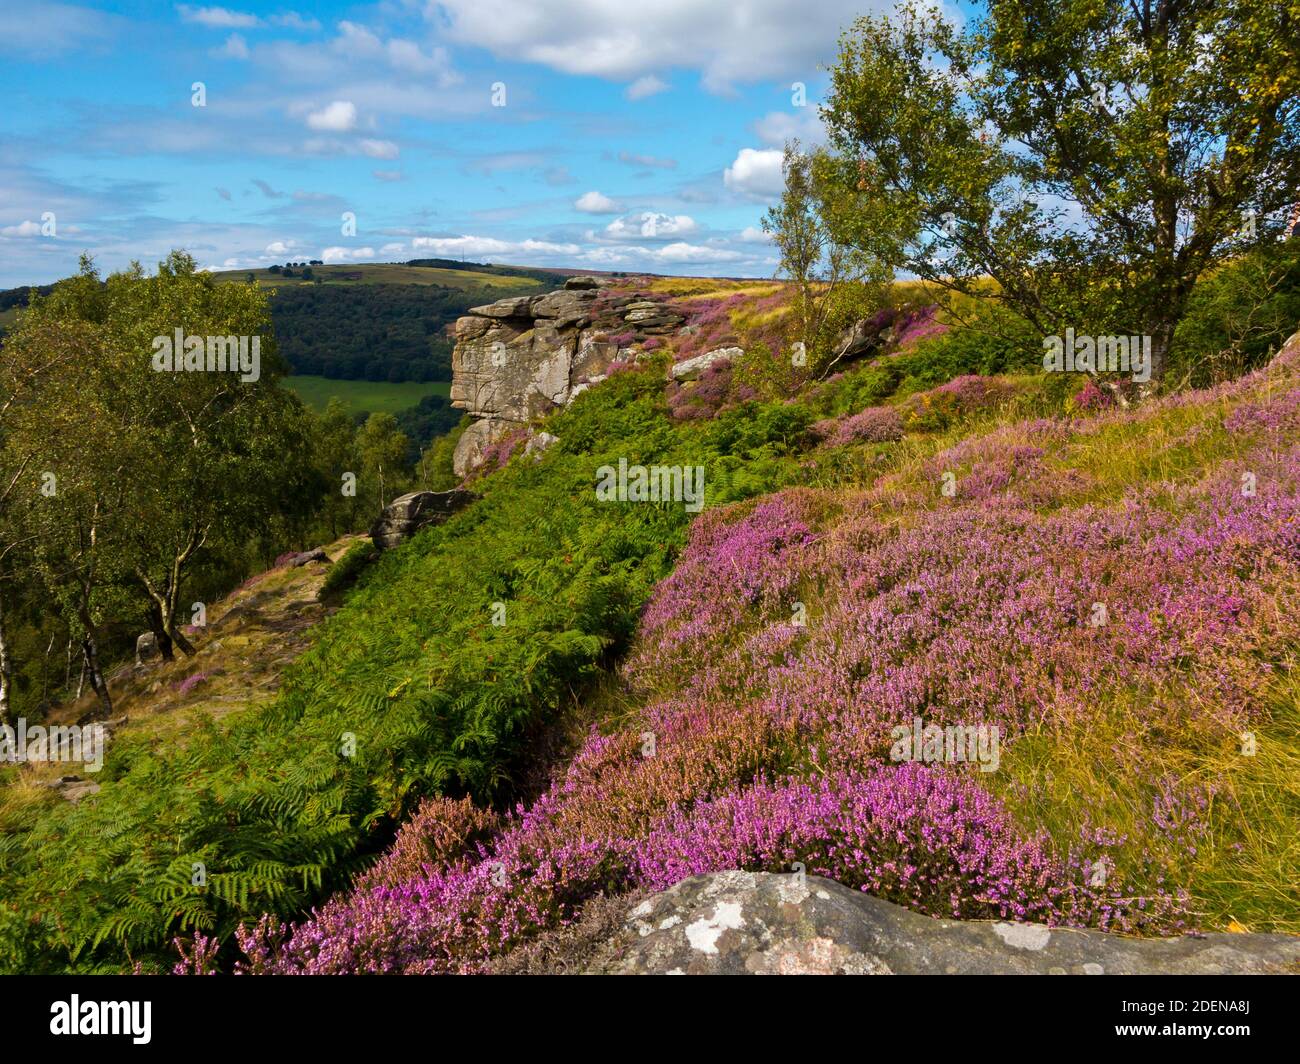 La bruyère de la fin de l'été sur Froggatt Edge un escarpement de pierre à aiguiser dans la région de Dark Peak du parc national de Peak District, à Derbyshire, Angleterre Royaume-Uni Banque D'Images